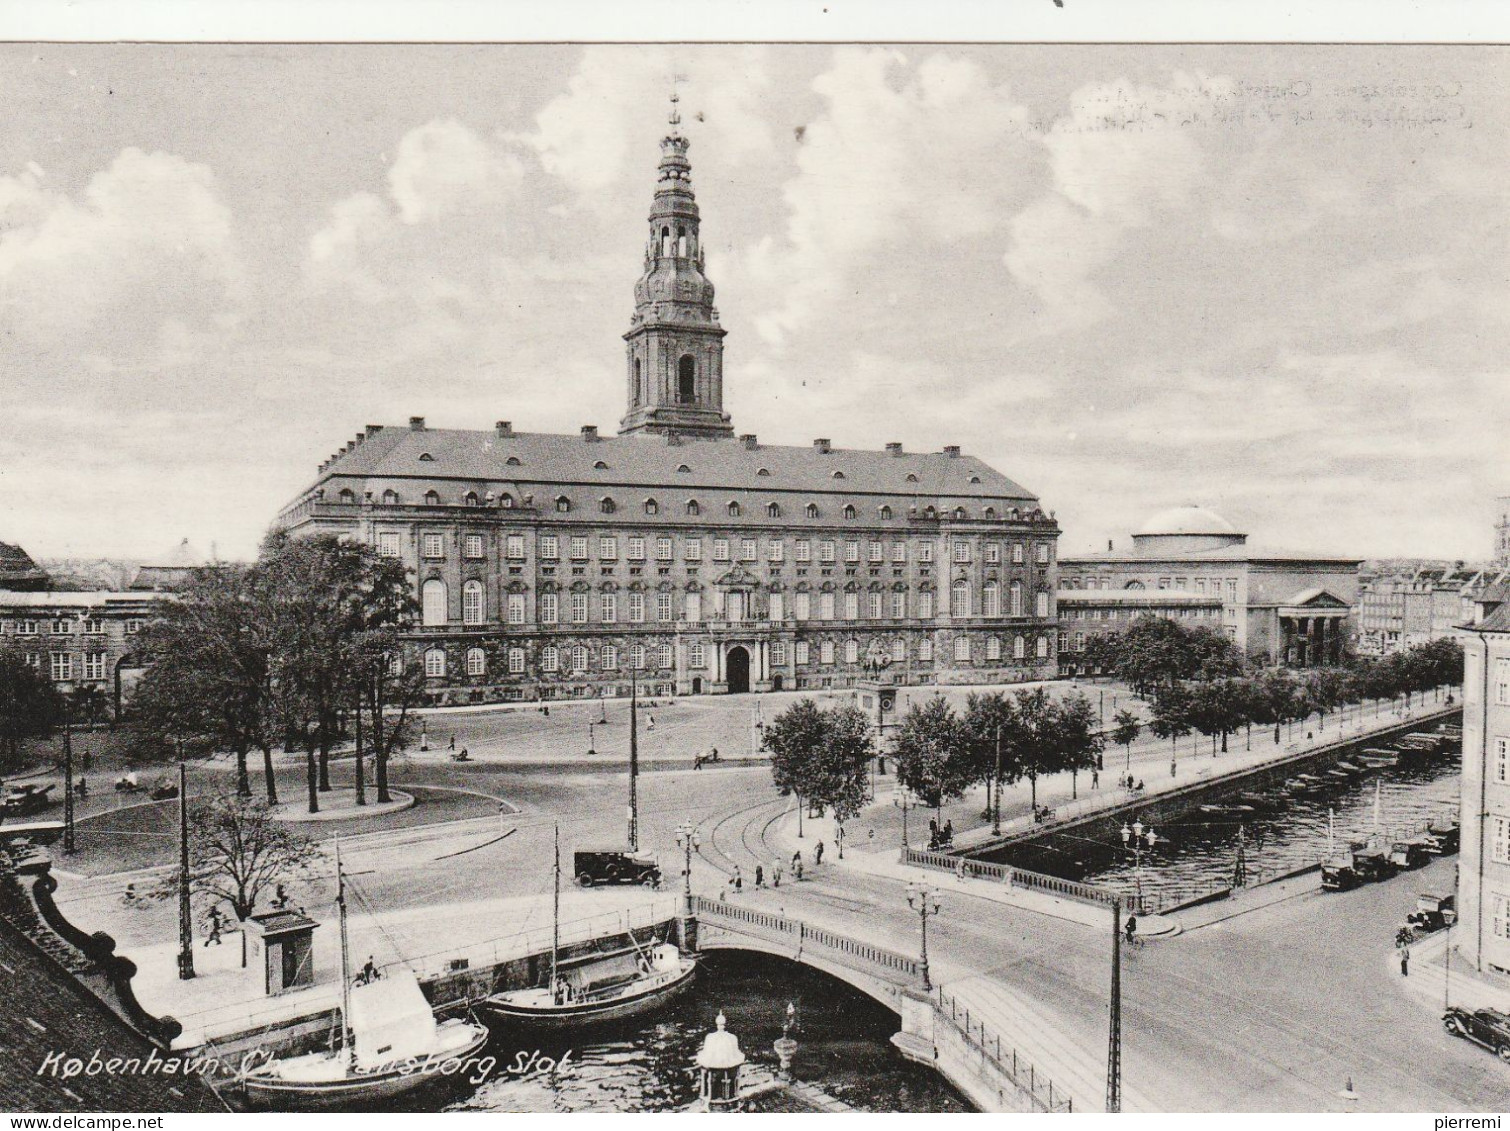 Christianborg Palace - Denmark